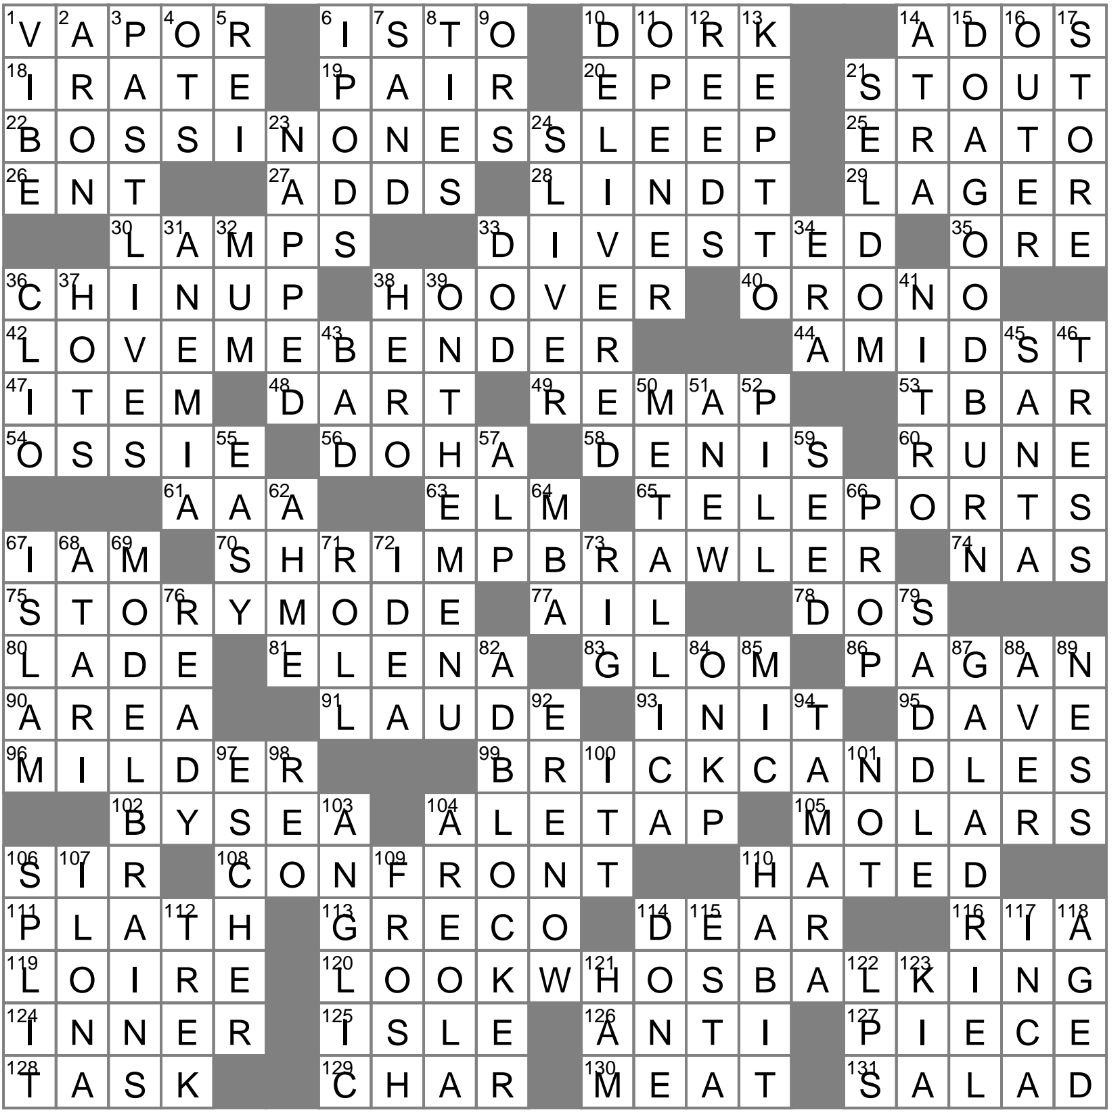 030823 NY Times Crossword 8 Mar 23 Wednesday  NYXCrosswordcom